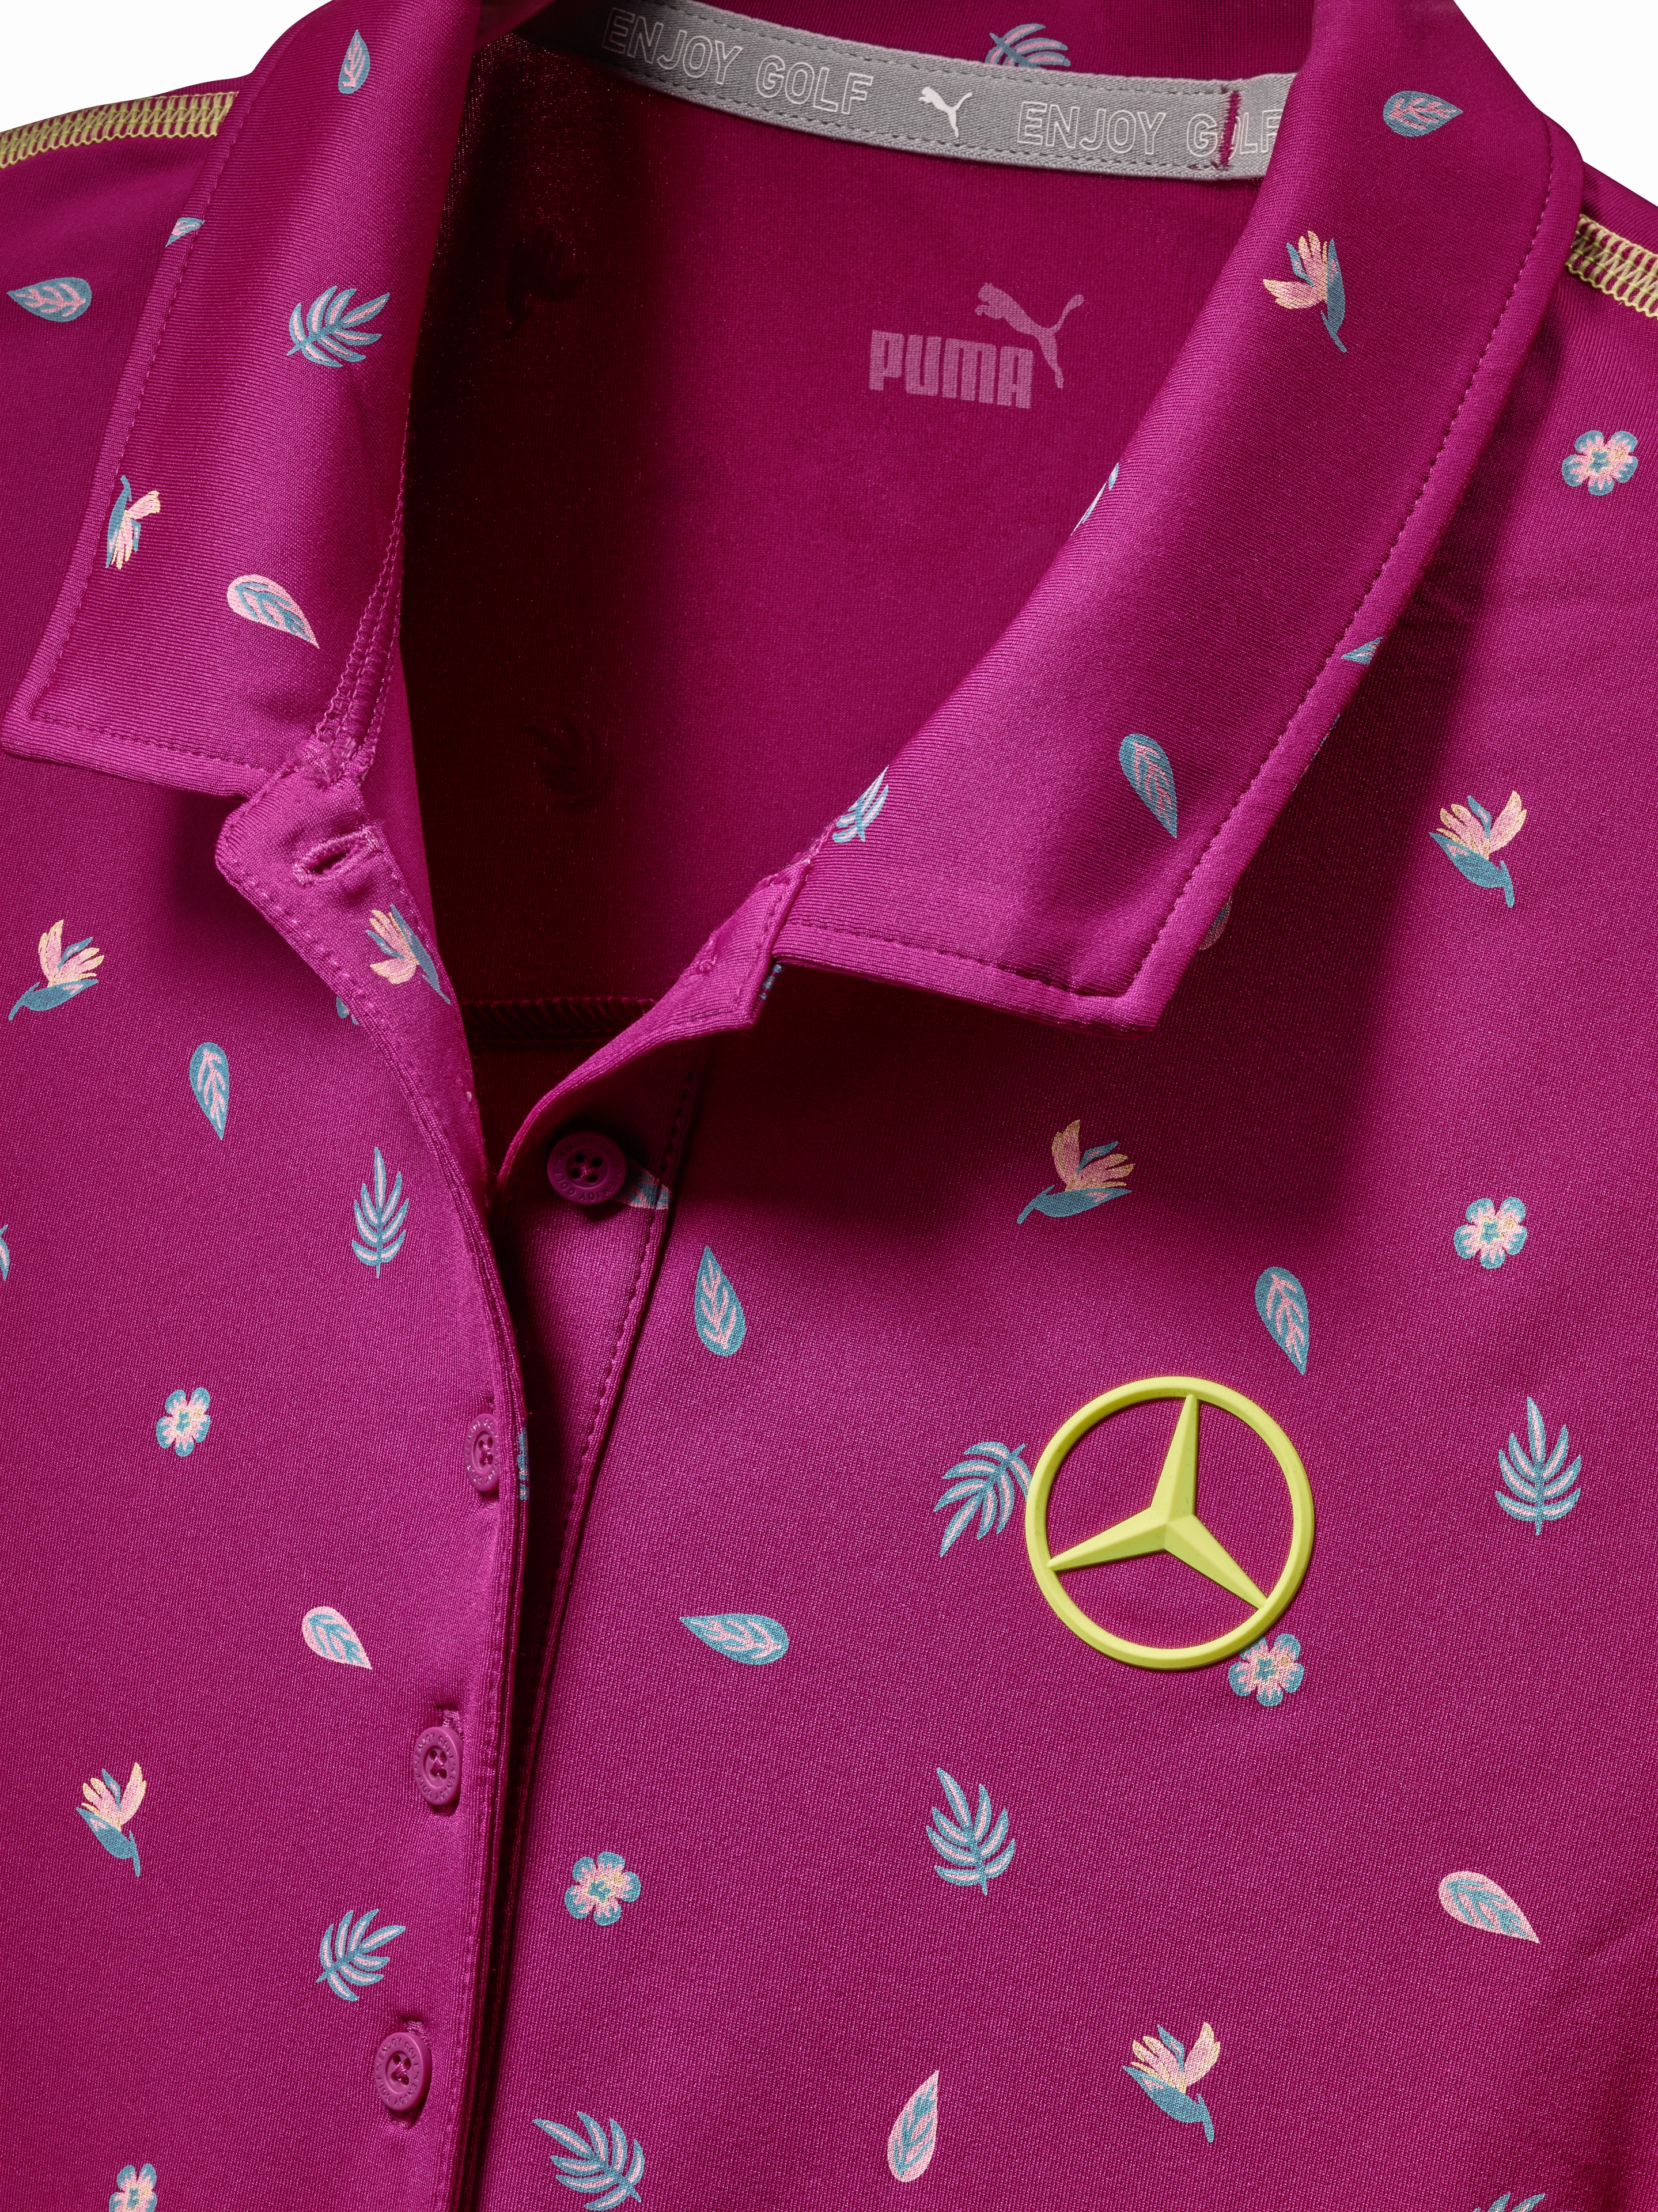 Golf-Poloshirt Damen - fuchsia, XL